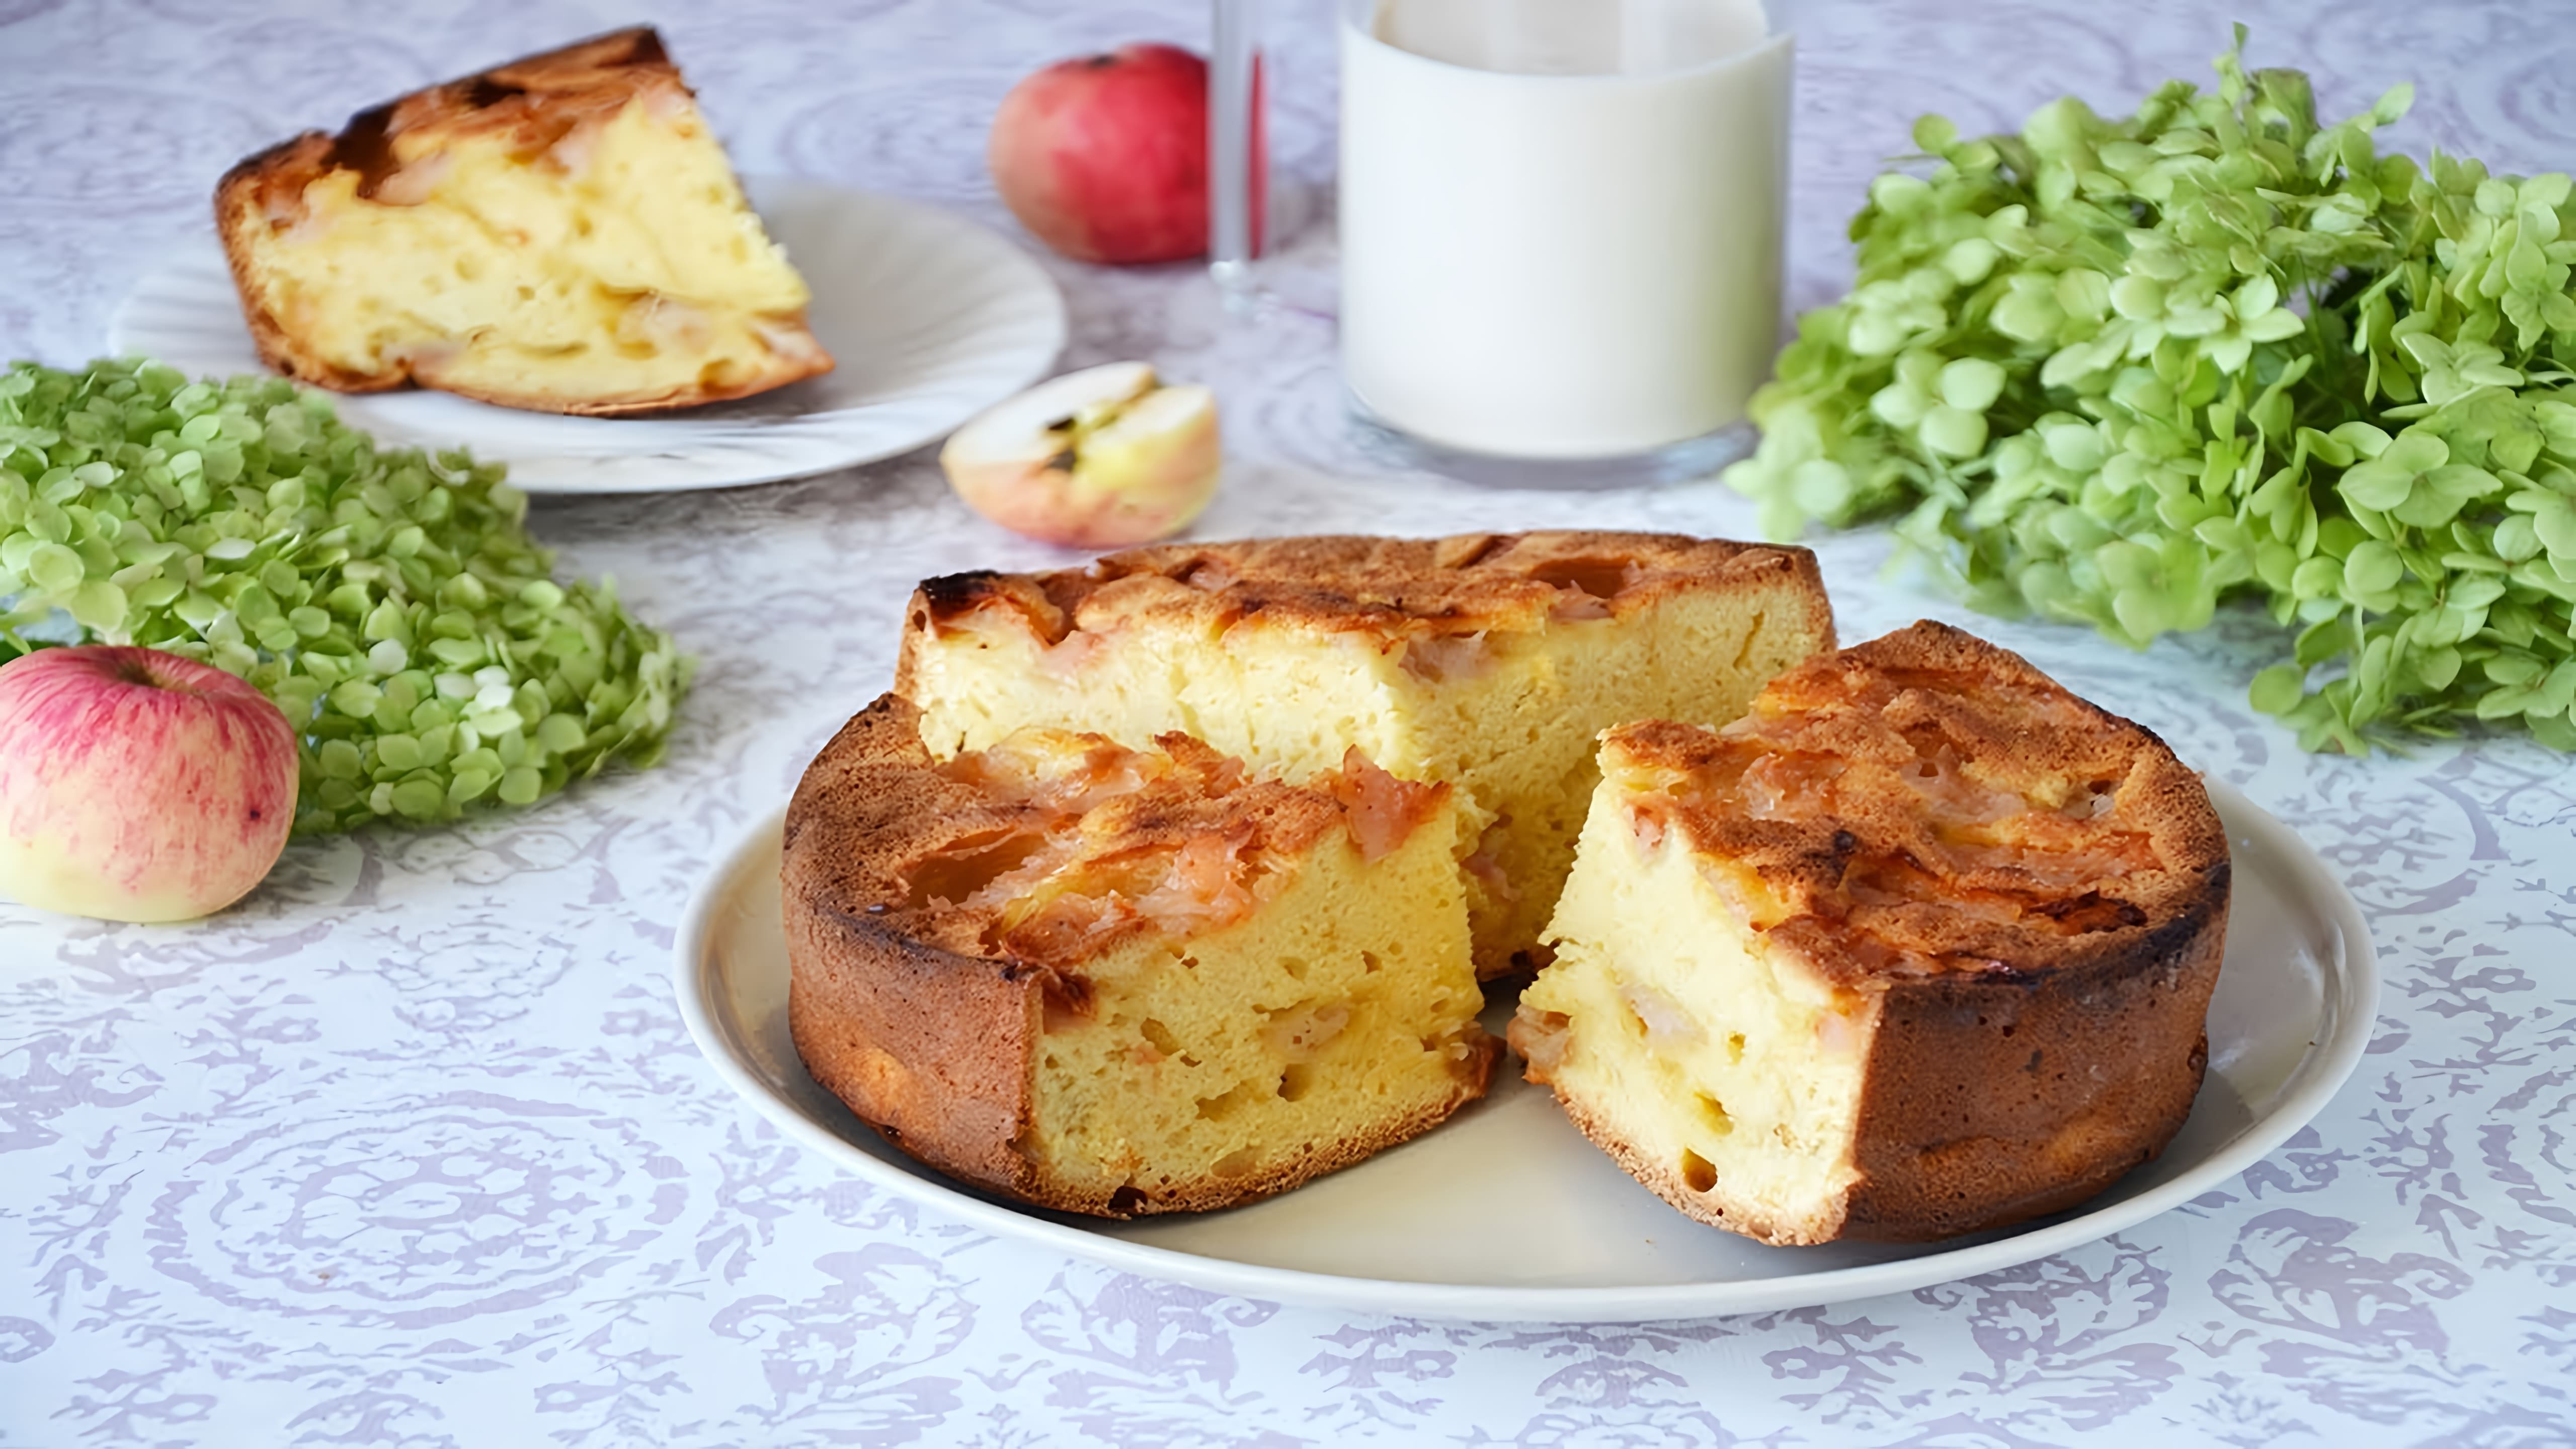 Супер Шарлотка - это пирог на ряженке с яблоками, который готовится очень просто и быстро